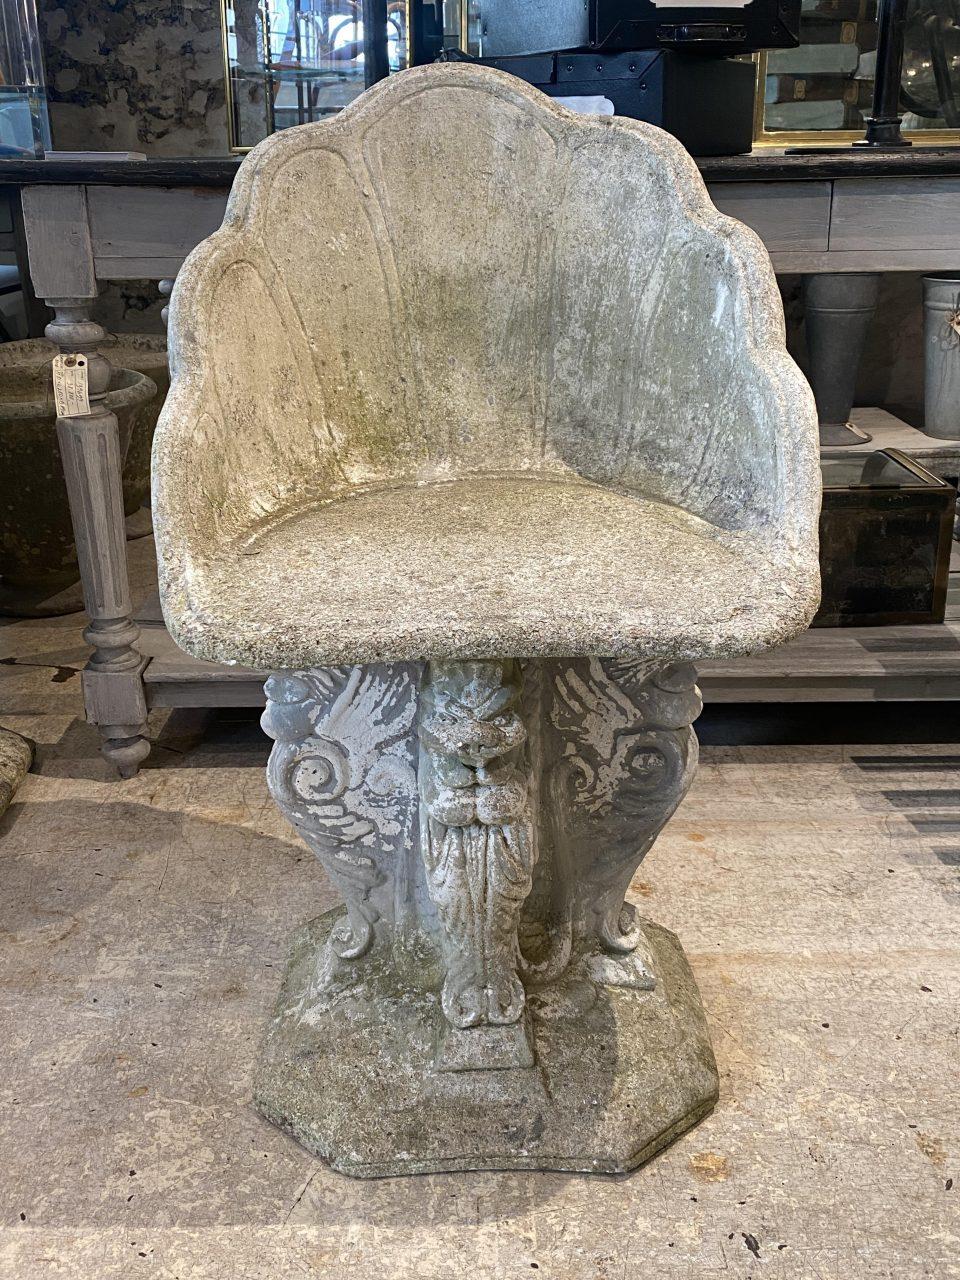 Absolut außergewöhnlich, und charmant Mitte des Jahrhunderts Französisch Gartenstuhl / skulpturale Figur. Aus Zement gegossen und mit einer Sitzfläche versehen, in der schönen Form einer Muschel, die auf einem Sockel mit 3 Sphinxen ruht. Der